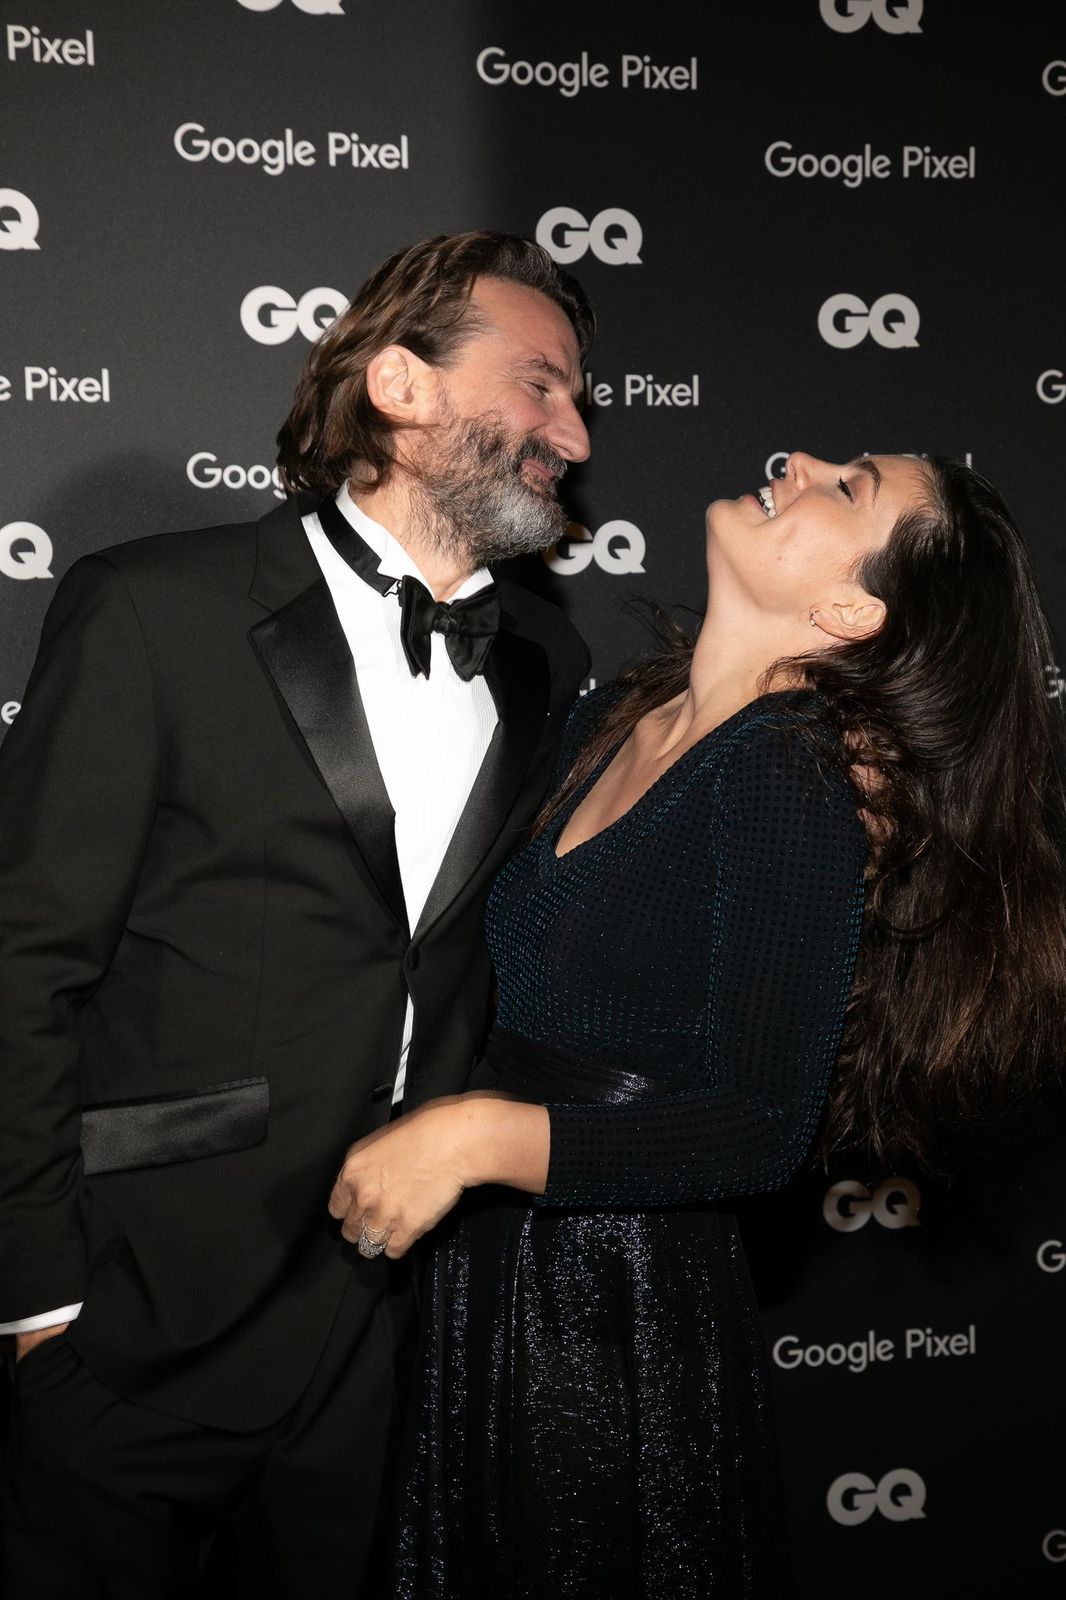 L'animateur Frédéric Beigbeder et son épouse Lara Micheli assistent à la remise des prix GQ Men of the Year 2018 au Centre Pompidou le 26 novembre 2018 à Paris, France. | Photo : Getty Images